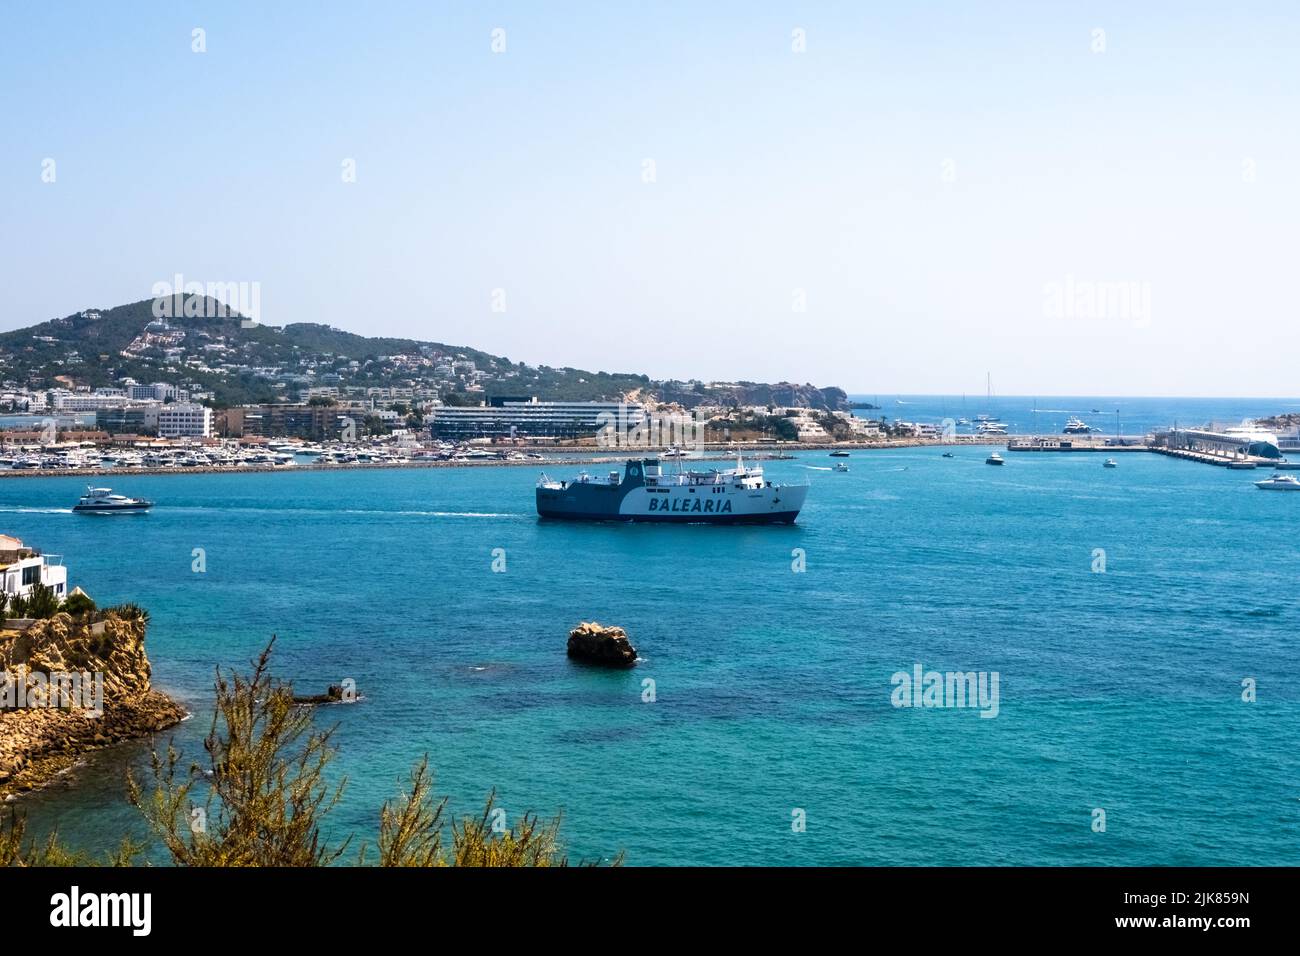 Ibiza, espagne - 26 juillet 2022 : le ferry Balearia transporte des passagers et des voitures de l'île d'Ibiza à Formentera Banque D'Images